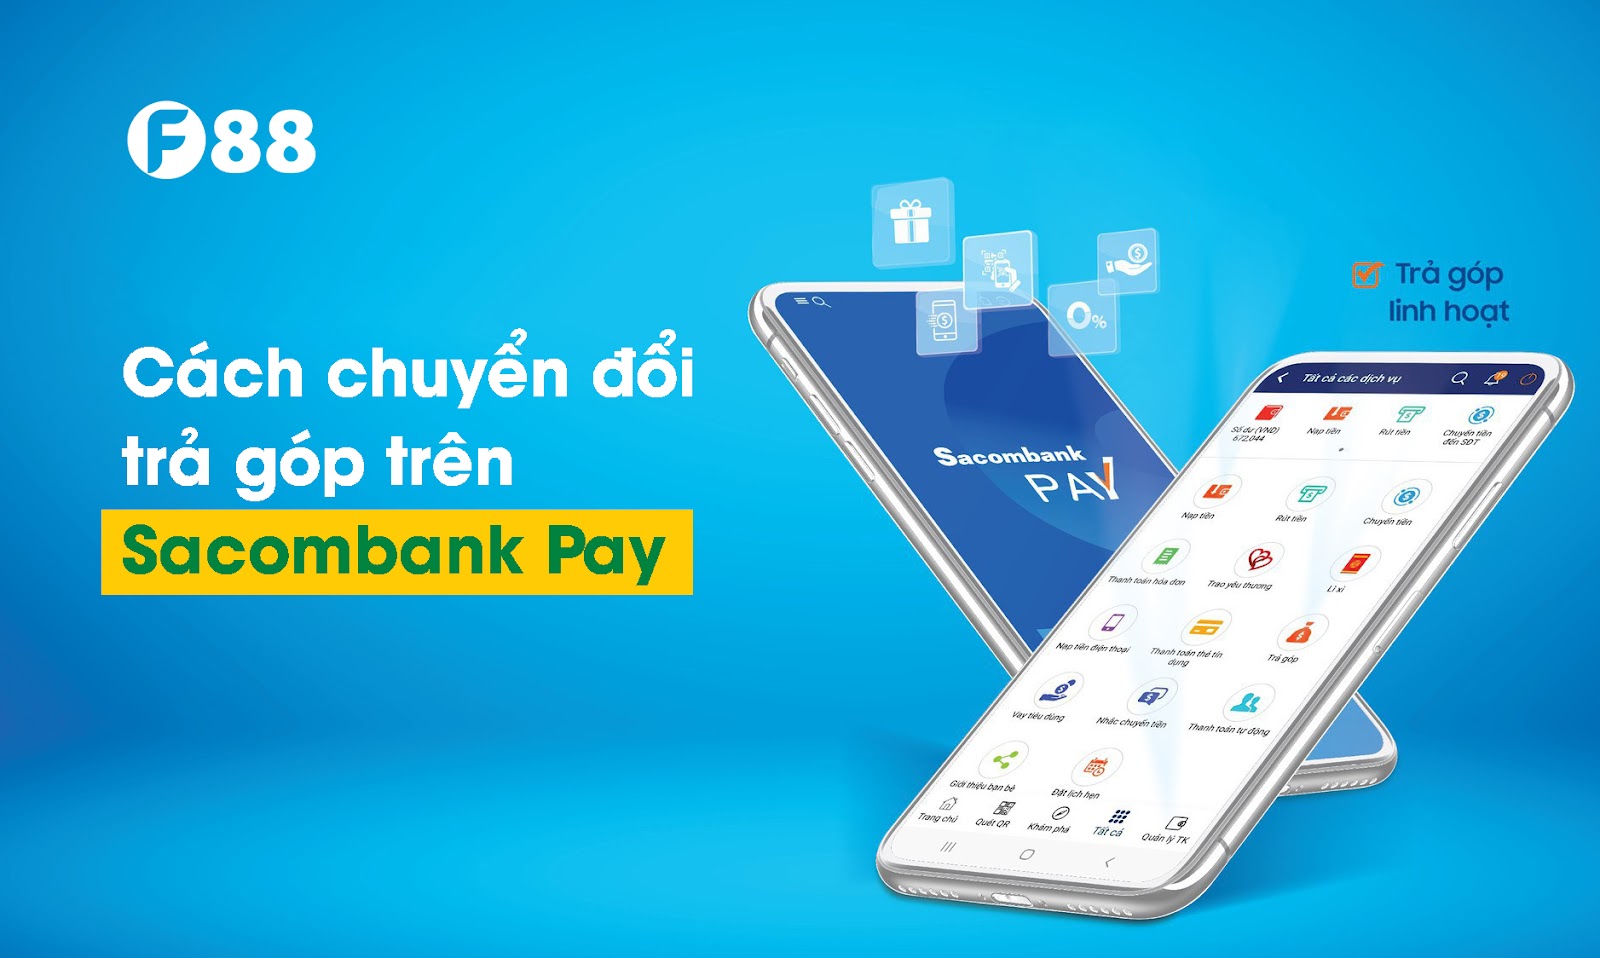 Cách chuyển đổi trả góp trên Sacombank Pay